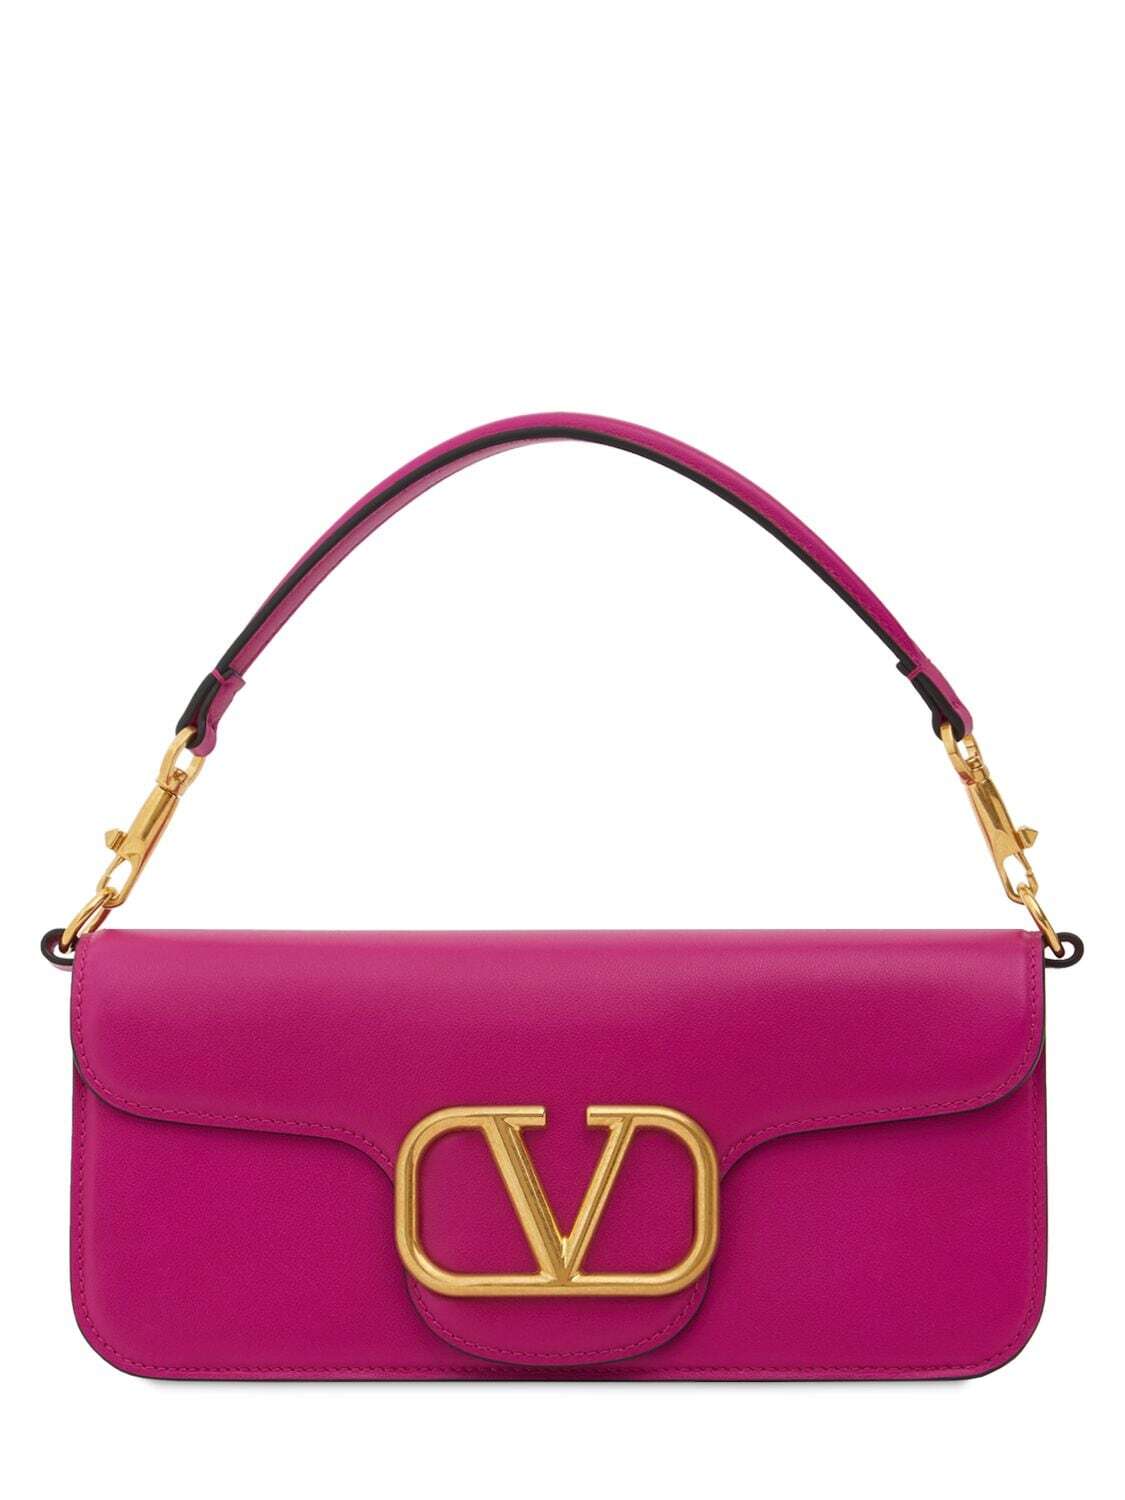 VALENTINO GARAVANI Locò Leather Shoulder Bag in rose / violet